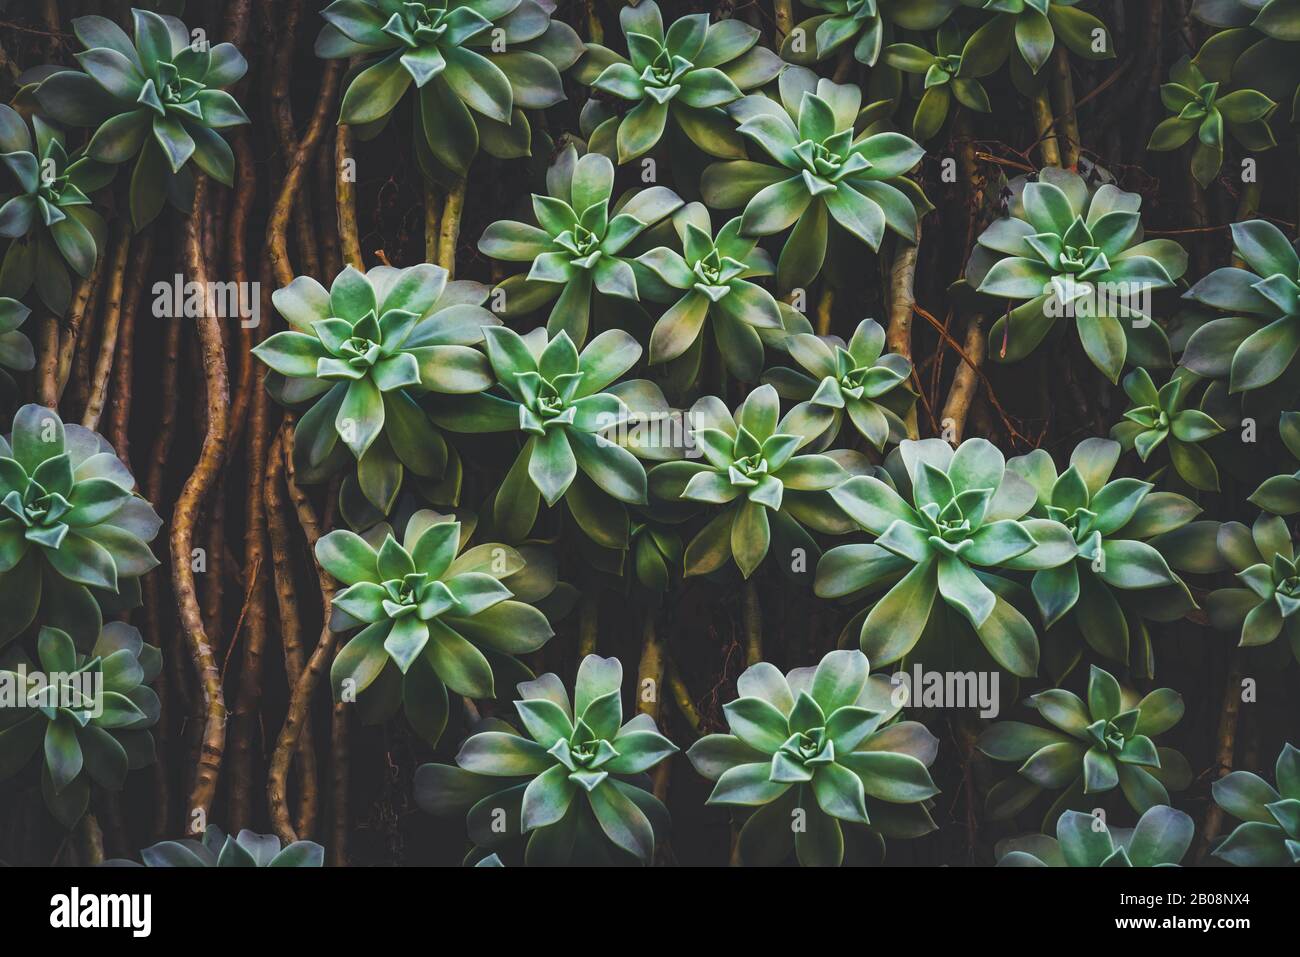 Hanging Sedum Palmeri Succulent plants Stock Photo